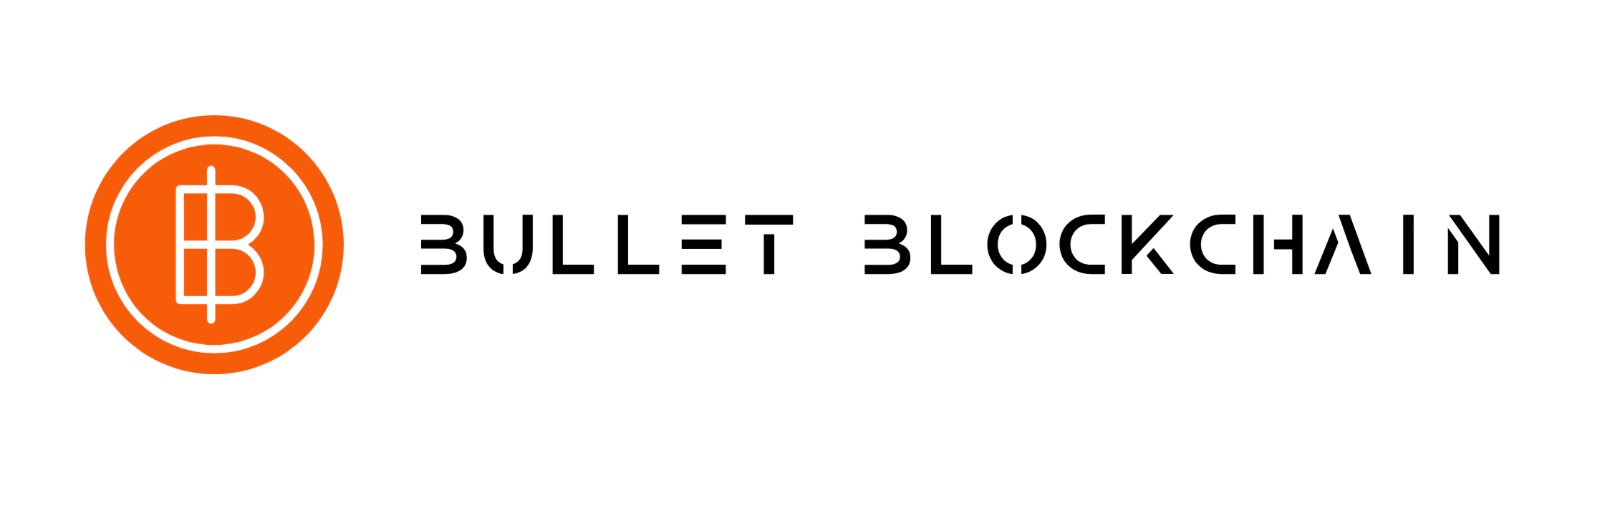 Bullet Blockchain LTD, Monday, April 26, 2021, Press release picture